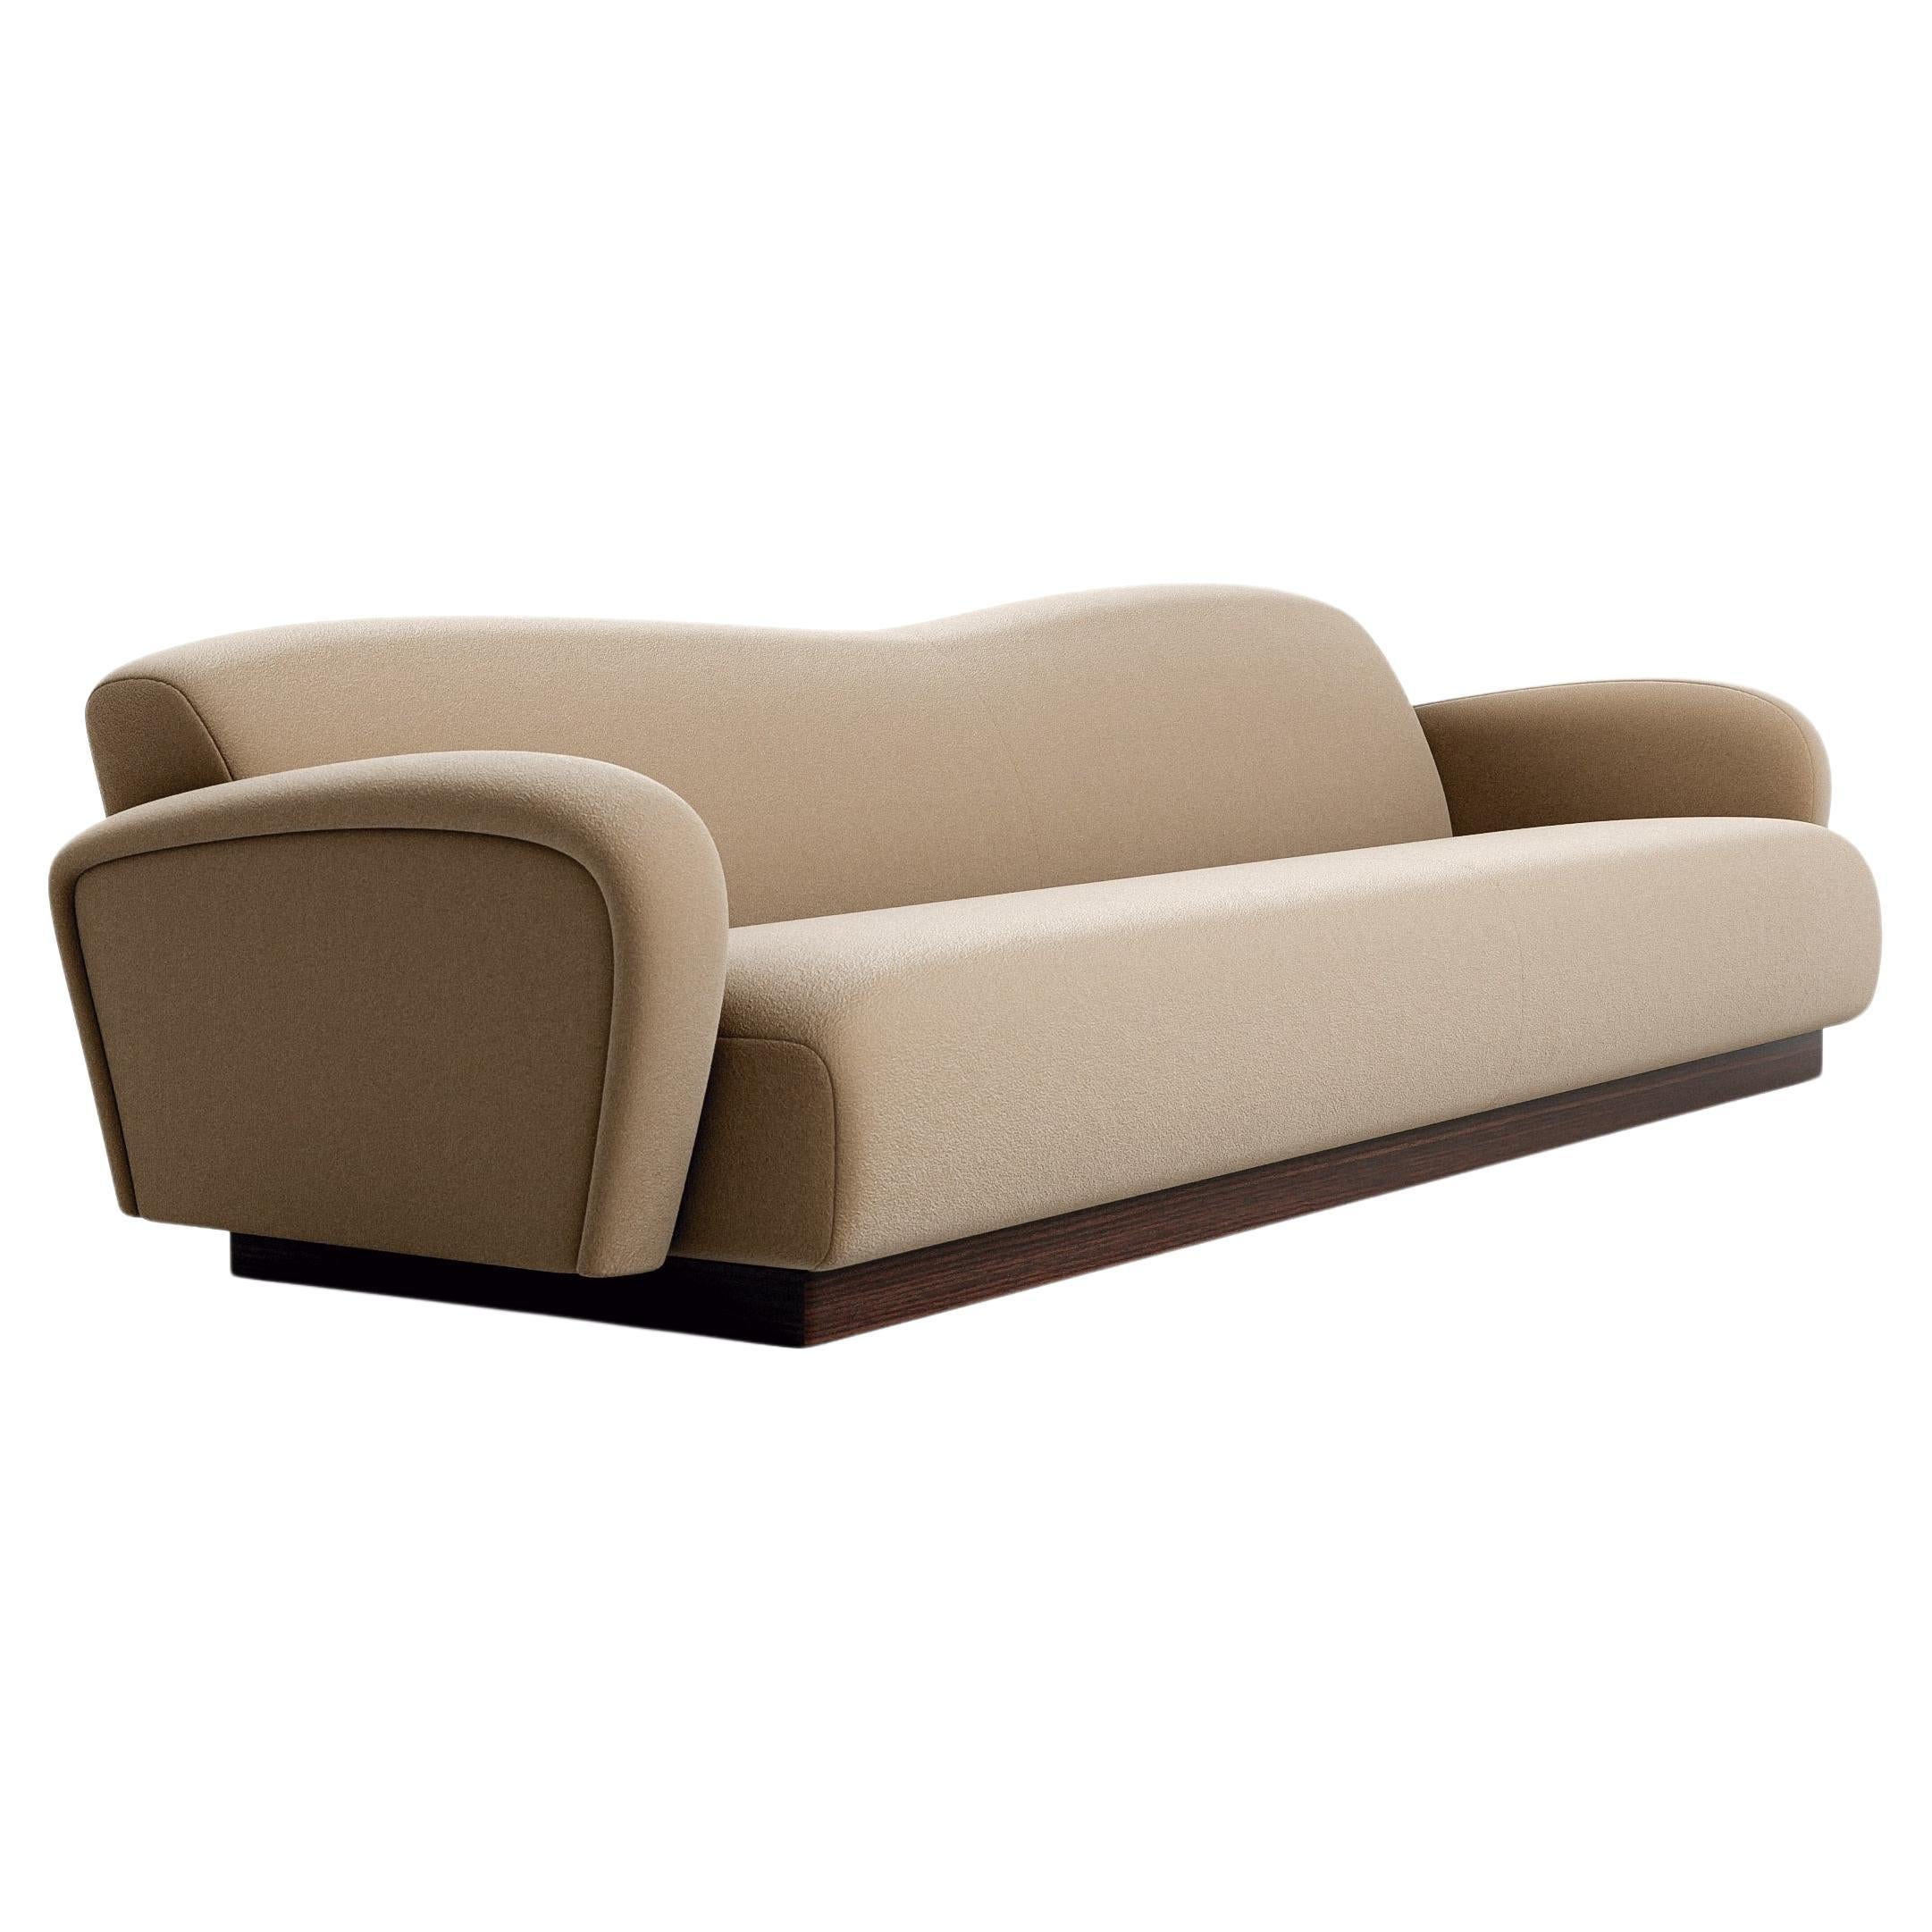 Midcentury Modern Style Sofa in Samt und Walnuss Basis